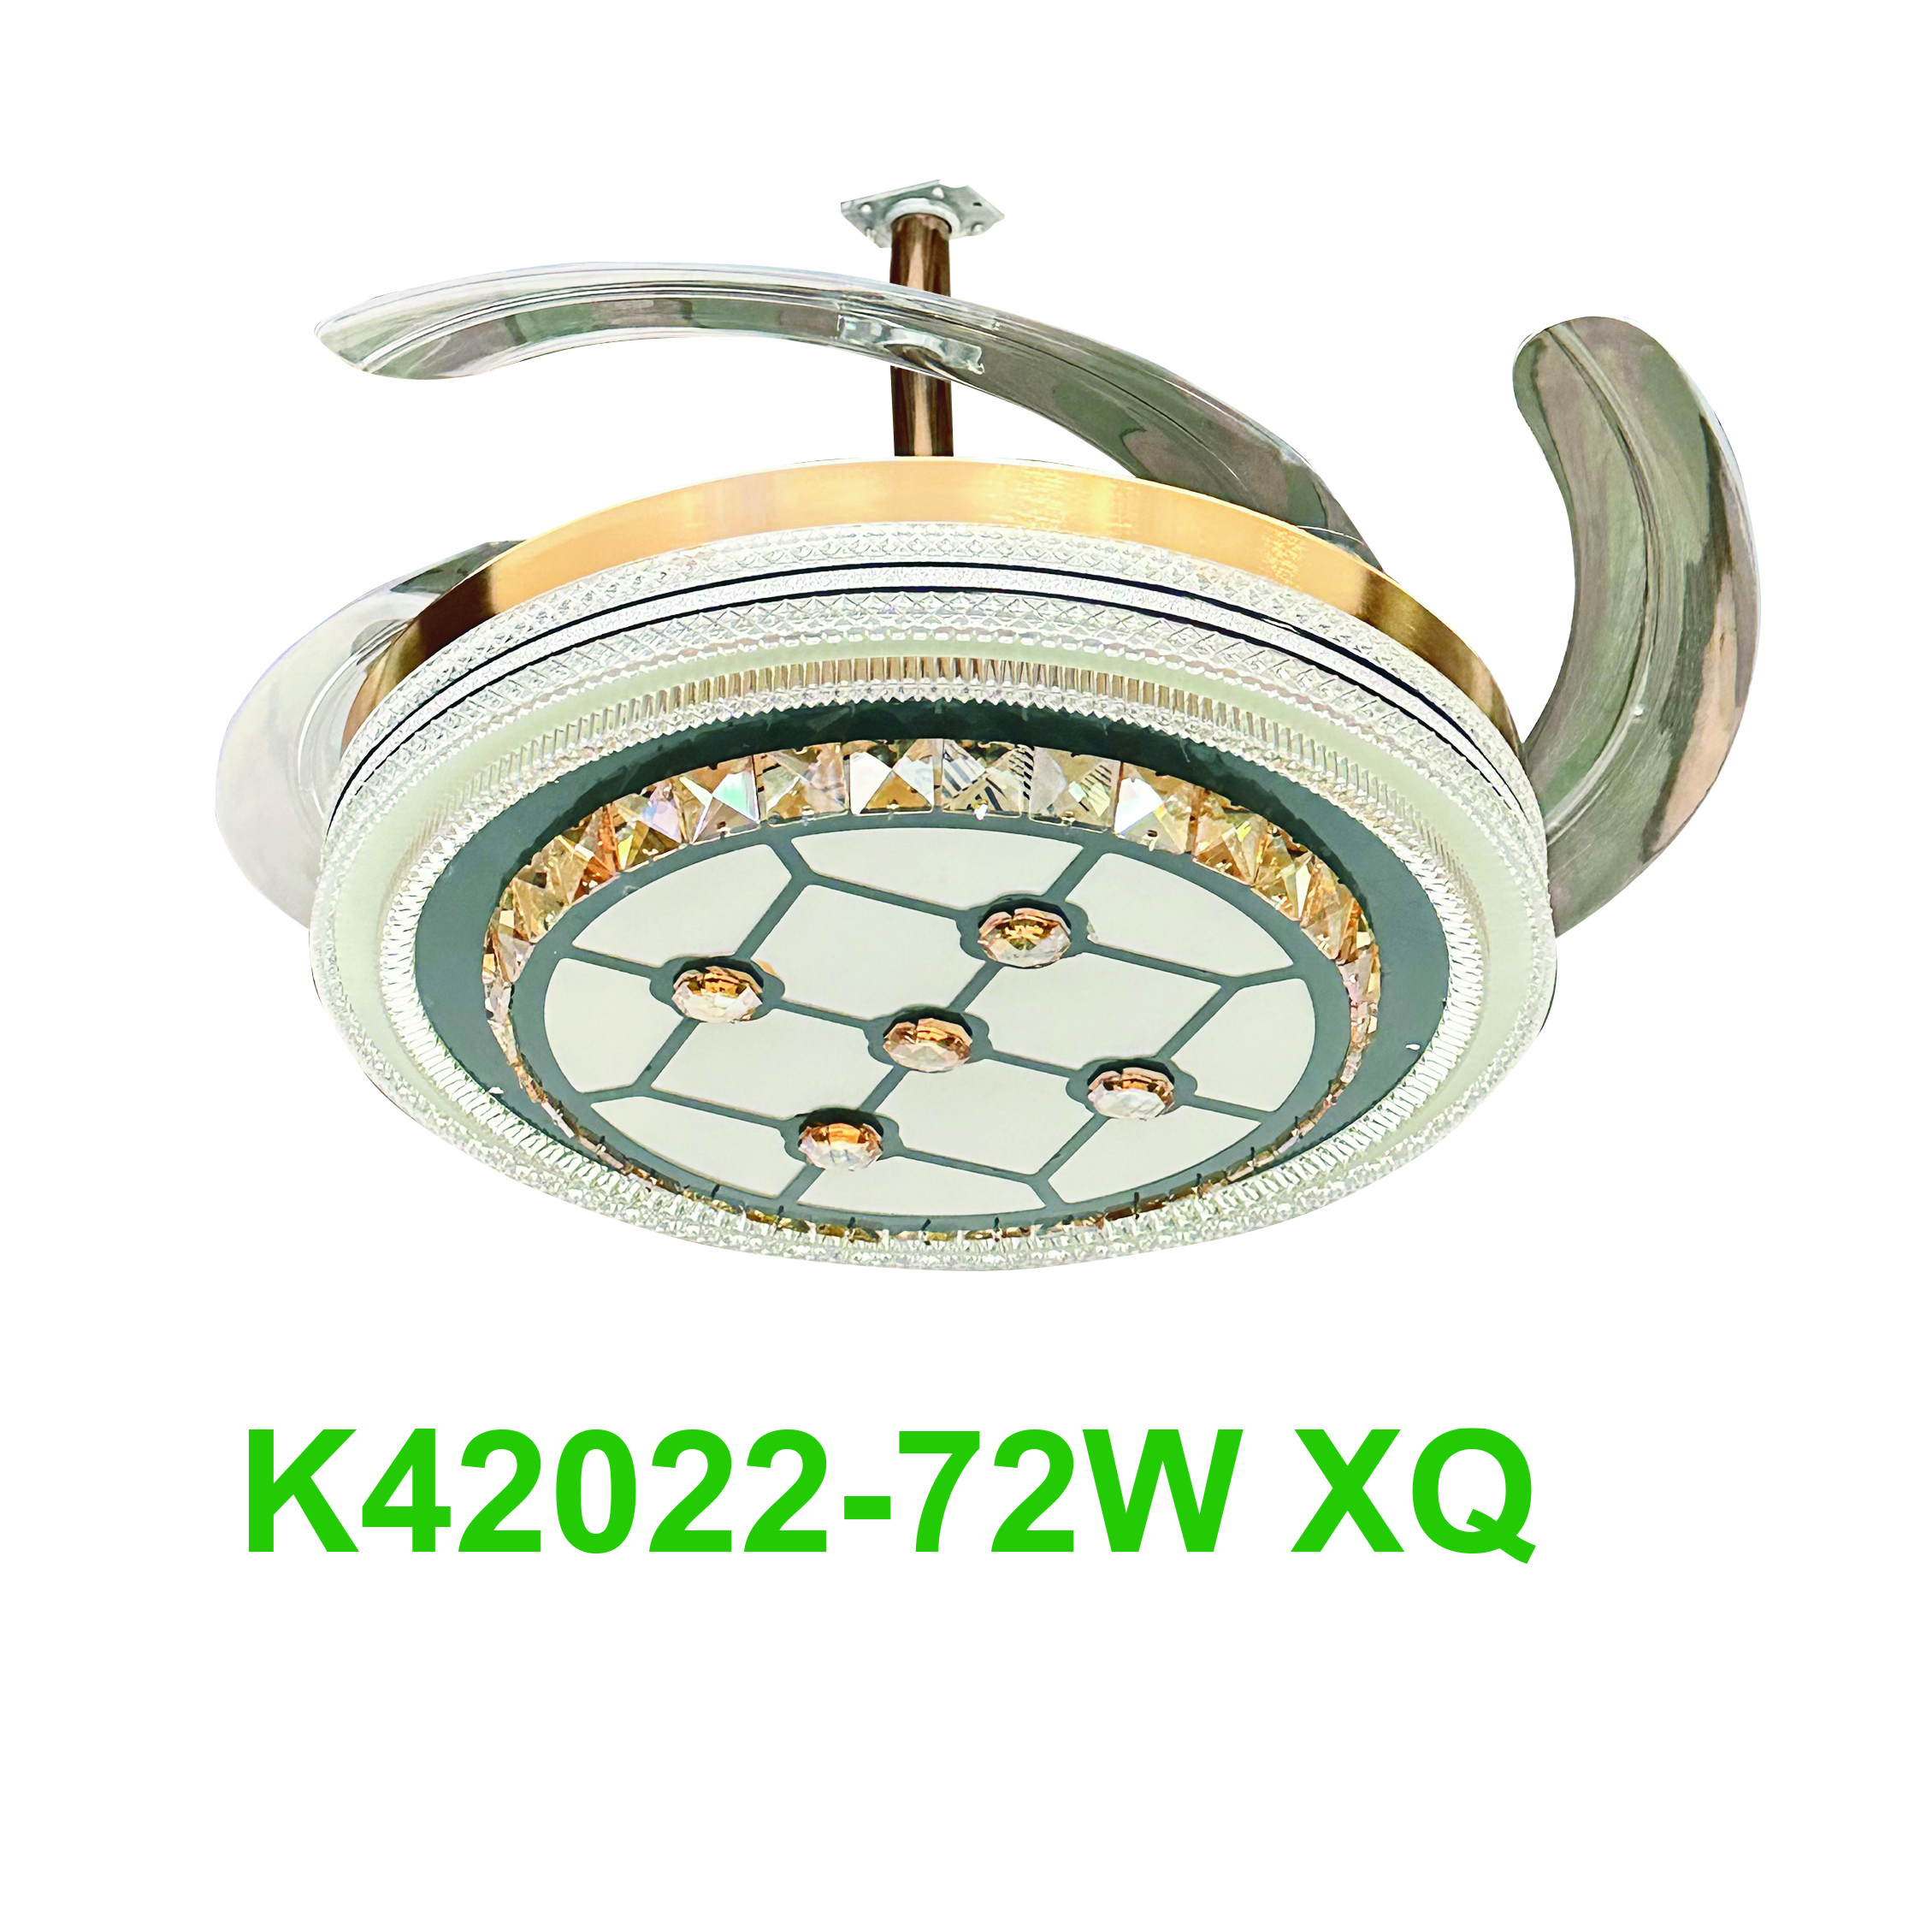 K42022-72W XQ